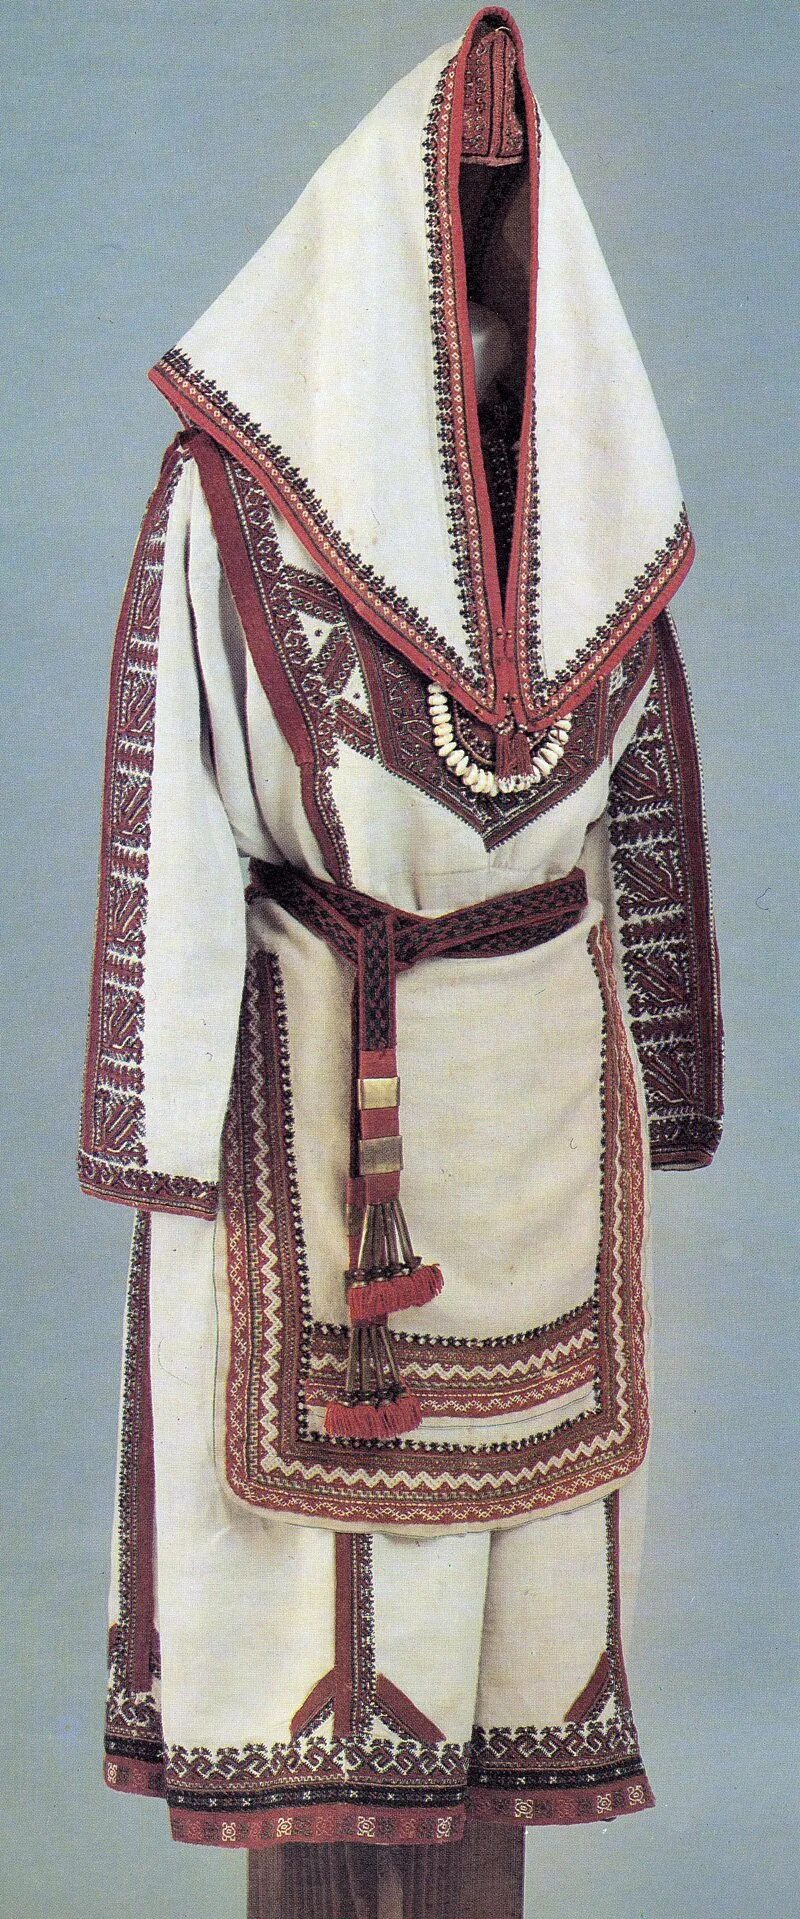 Традиционные костюмы марийского народа